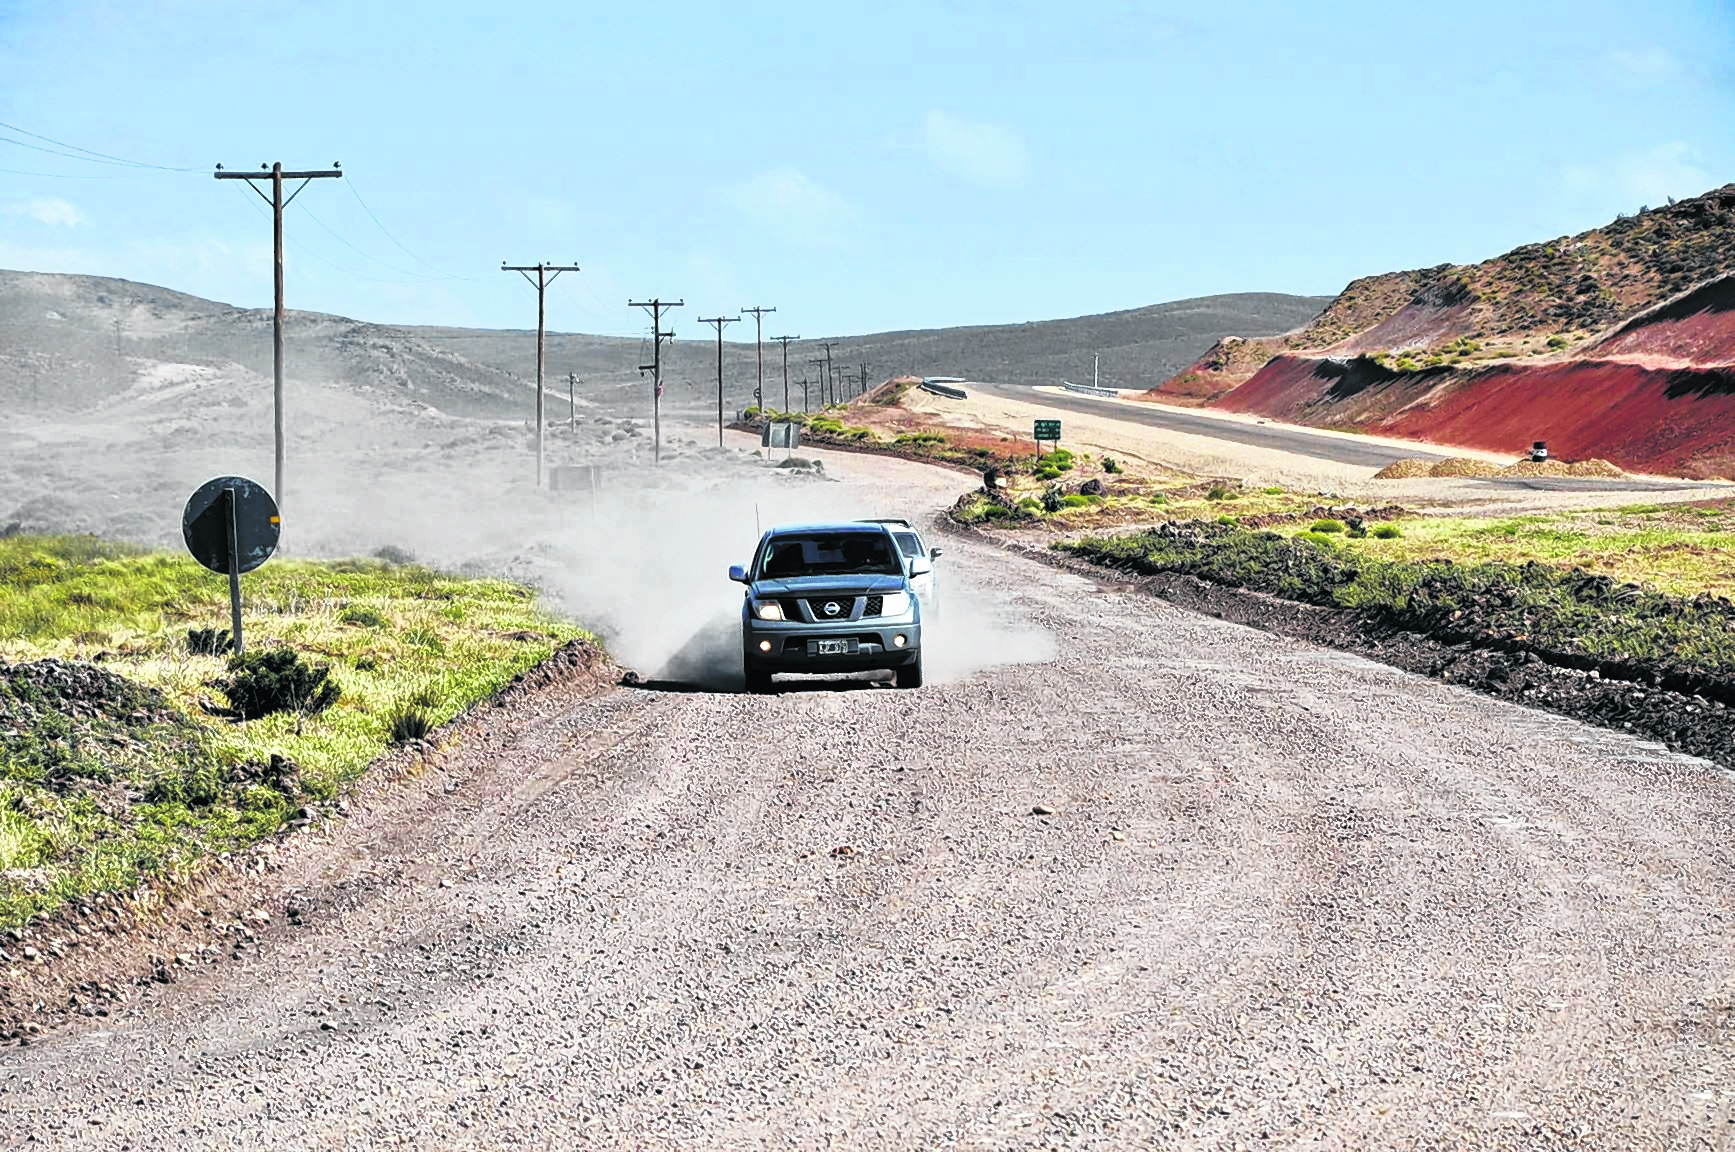 Restan 95 kilómetros de asfalto en la ruta 23. La nueva gestión de Vialidad Nacional, esperanzada. Foto: José Mellado.